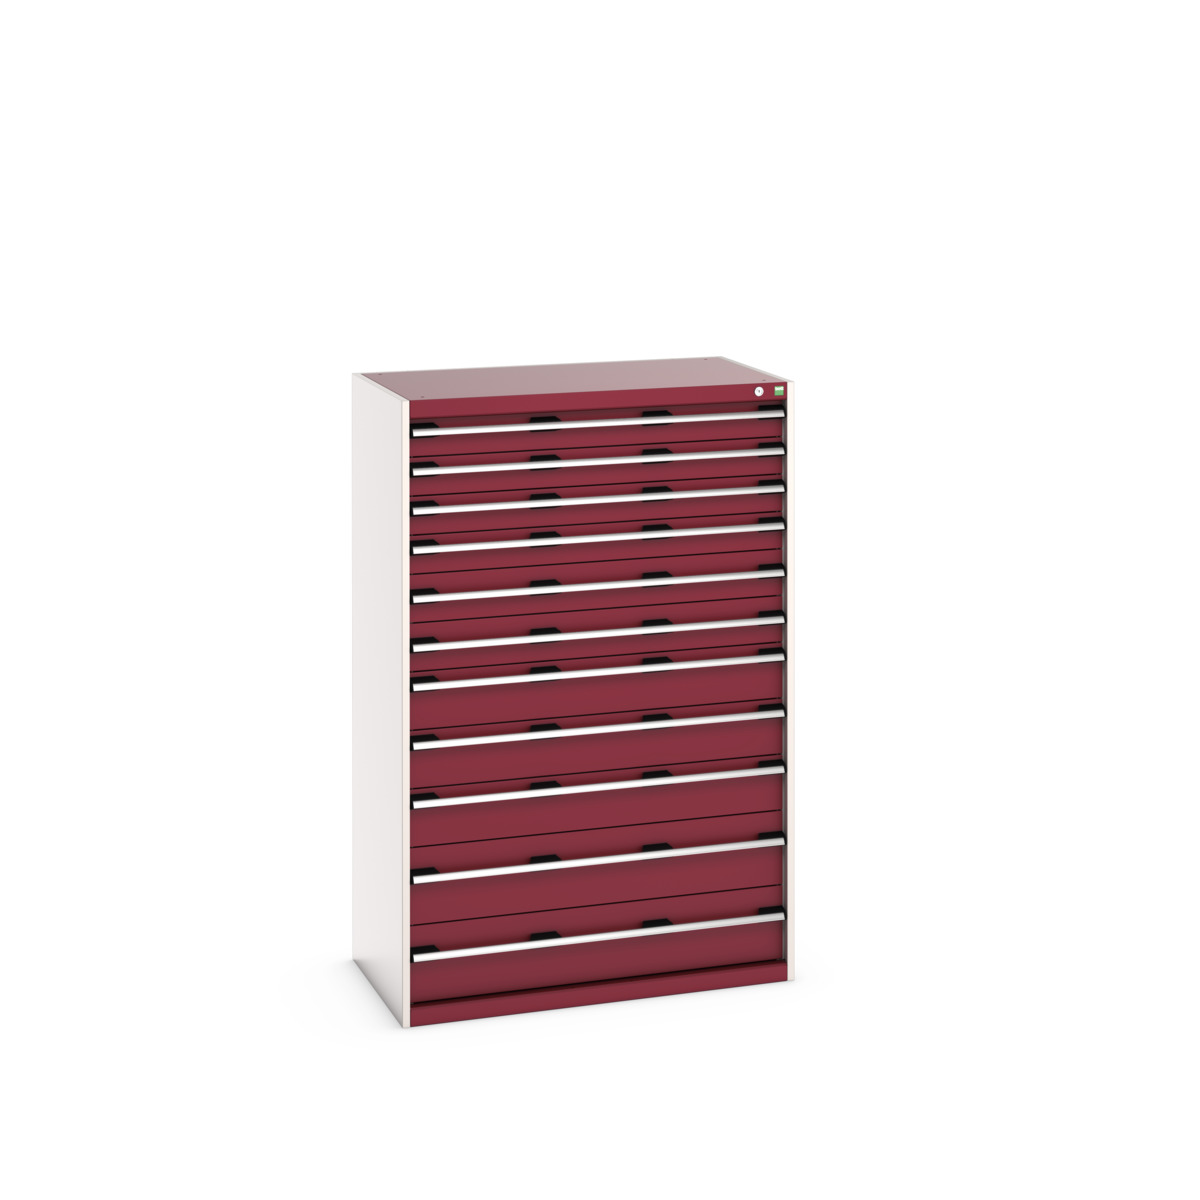 40021045.24V - cubio drawer cabinet